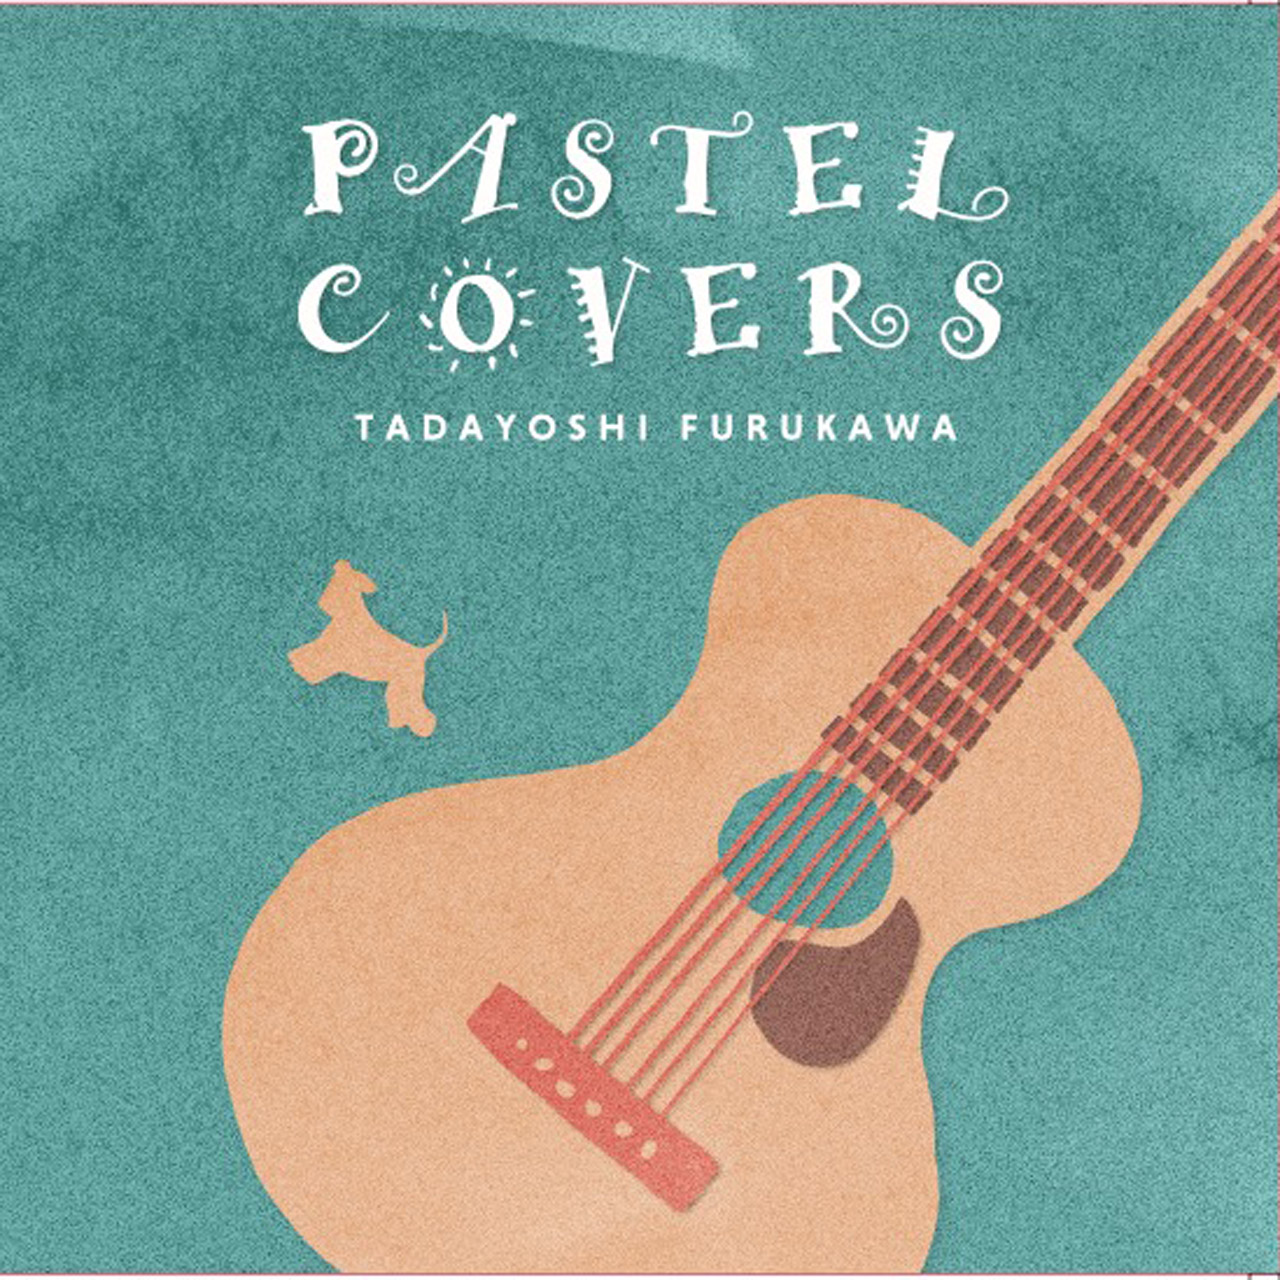 古川忠義・PASTEL COVERS・【音源CD+TABデータCDの2枚組】